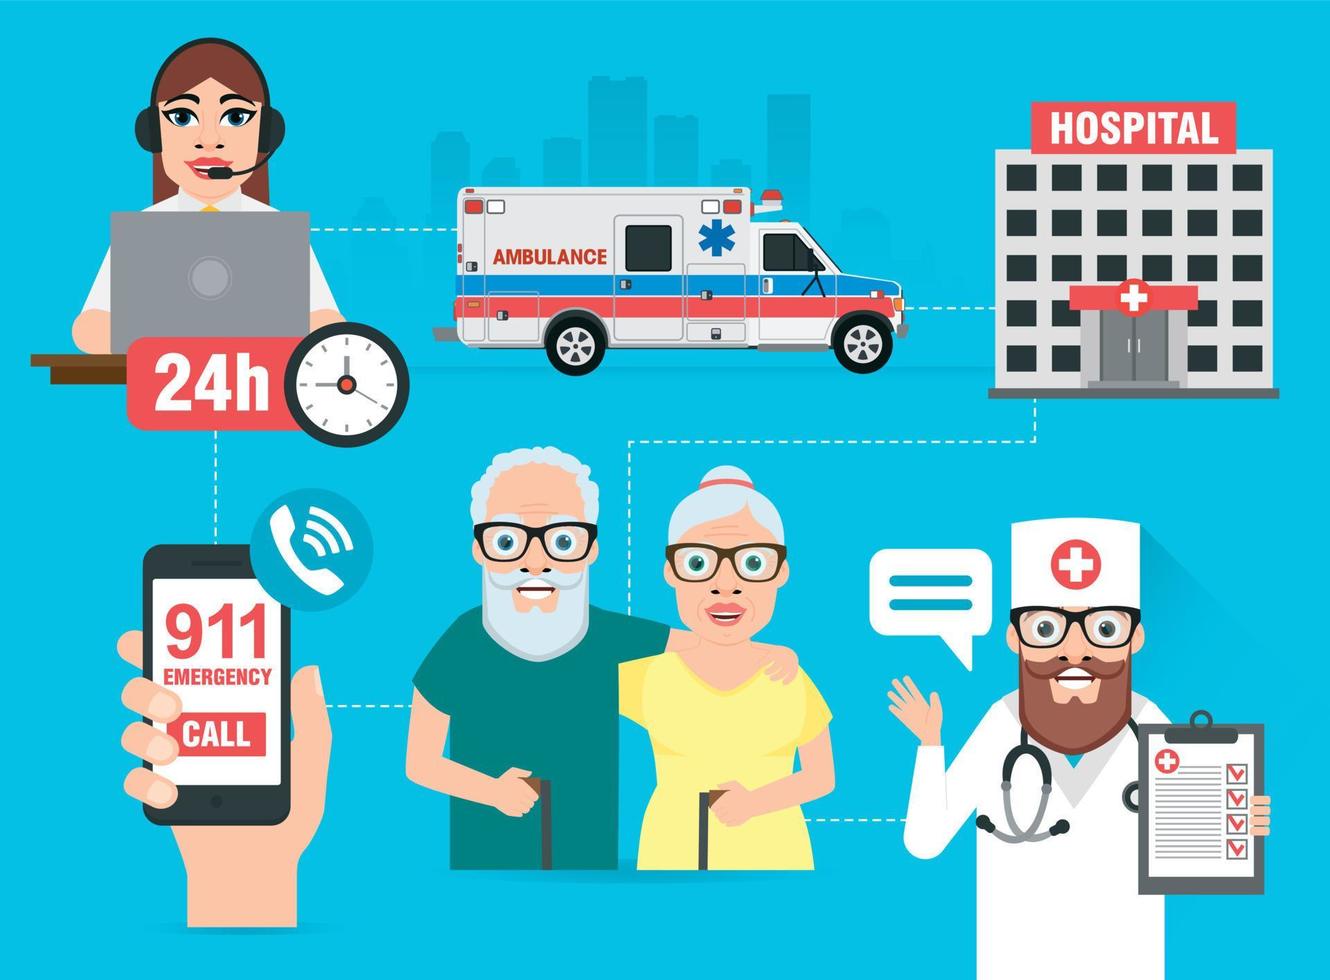 flaches infografik-banner des gesundheitskonzeptdesigns, 911-notruf vektor